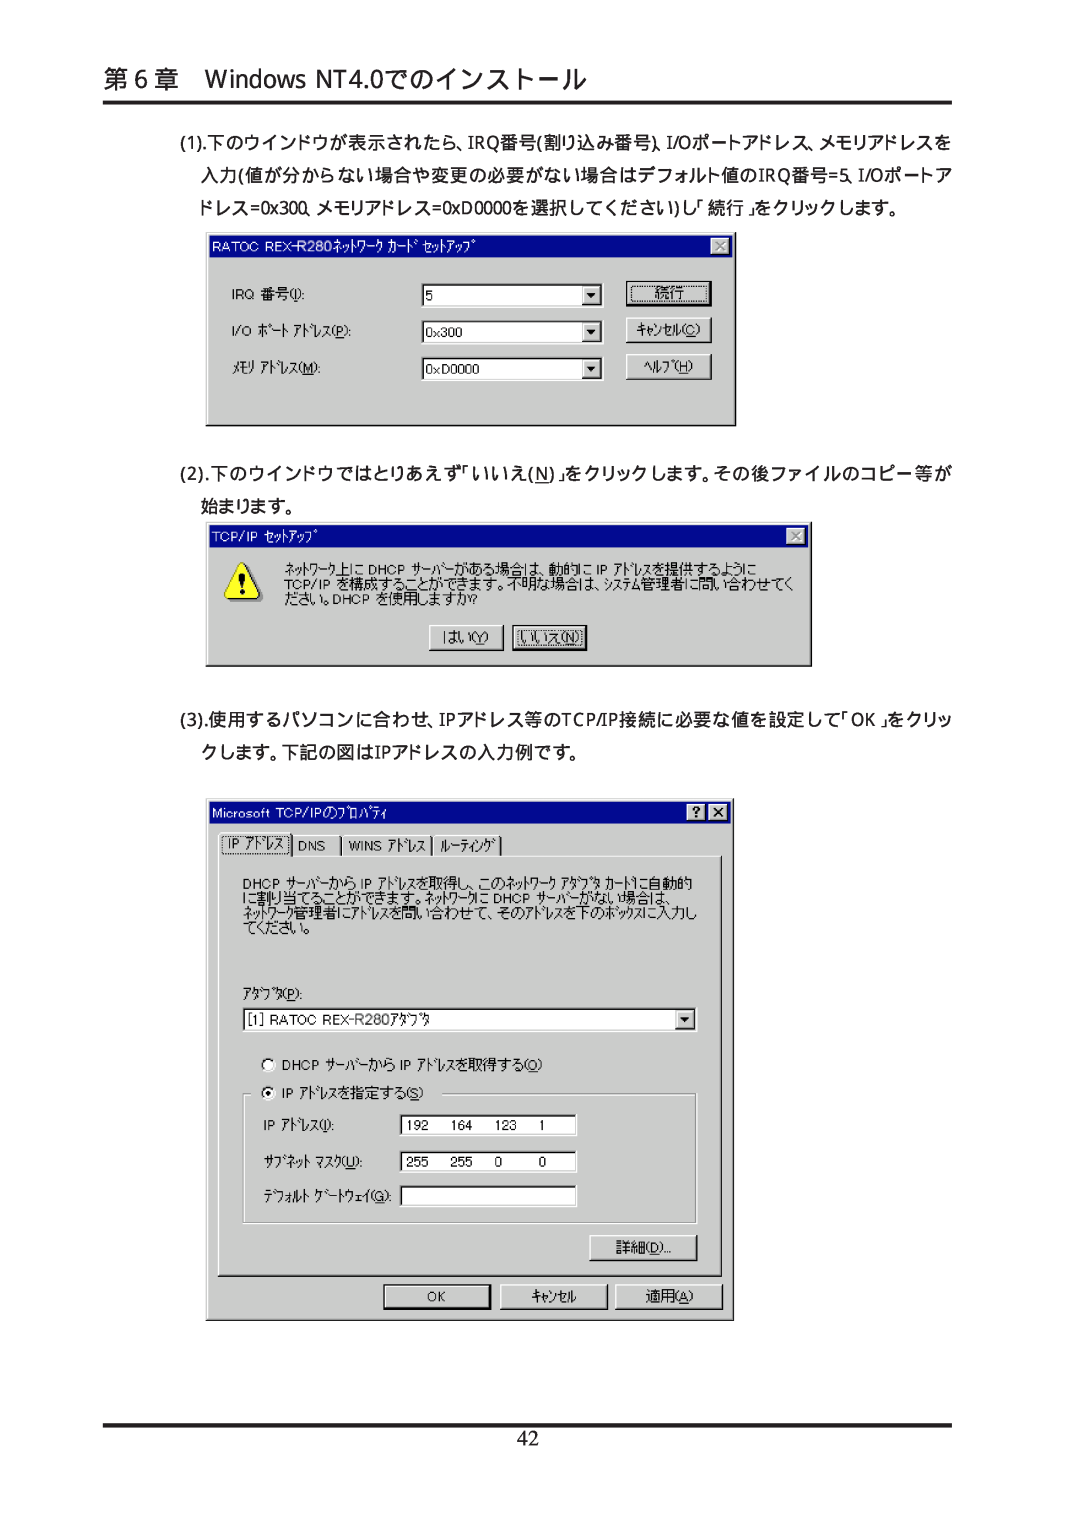 Ratoc Systems REX-R280 manual 第６章 Windows NT4.0でのインストール, 1.下のウインドウが表示されたら、IRQ番号割り込み番号、I/Oポートアドレス、メモリアドレスを 